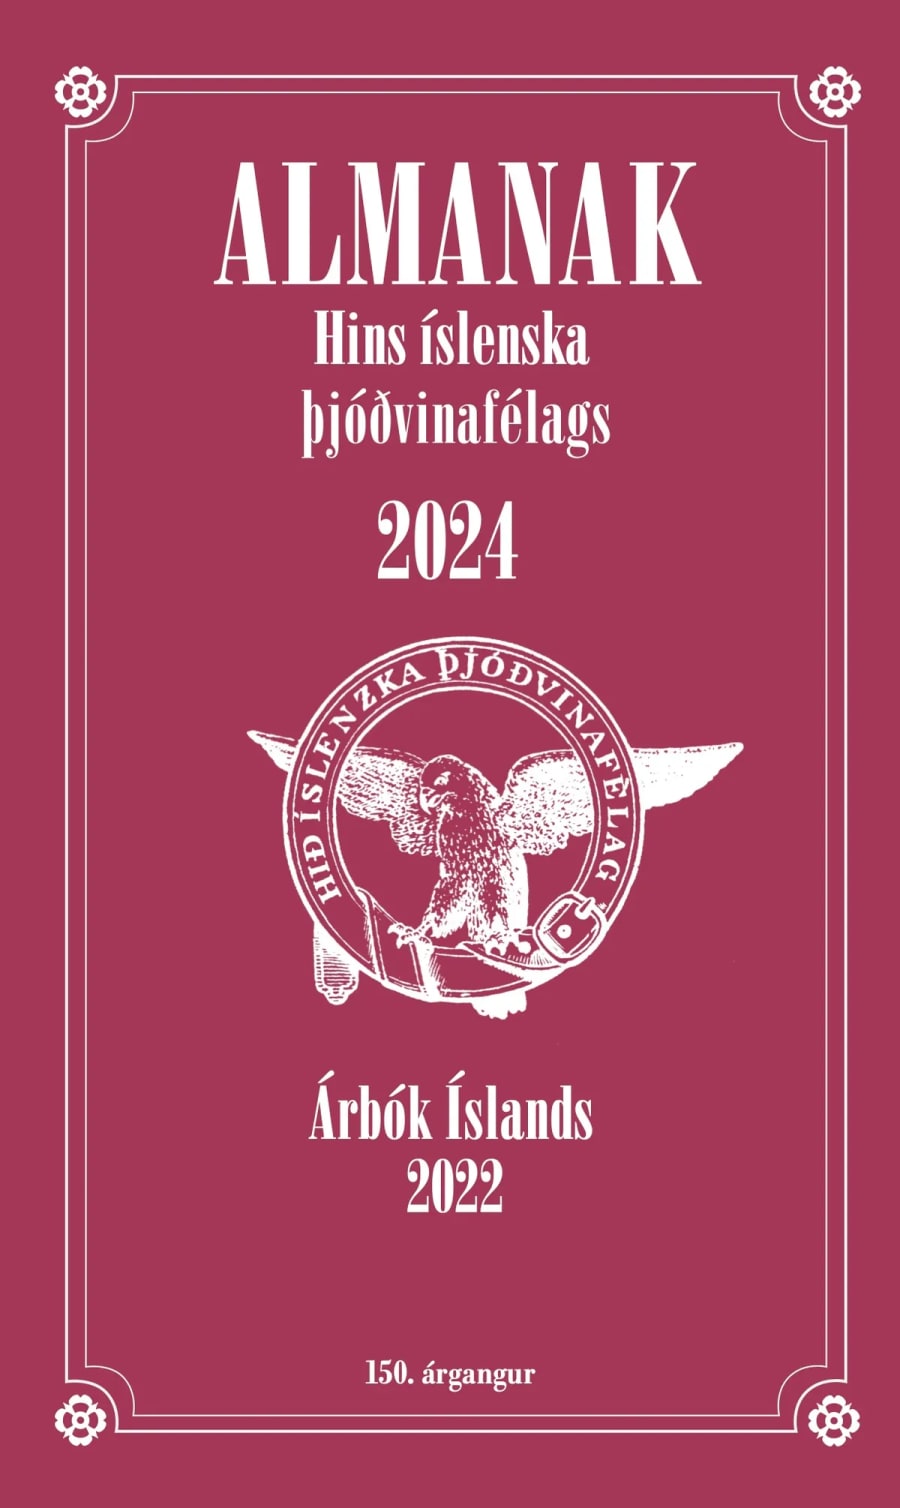 Almanak Þjóðvinafélagsins 2024 og árbók 2022